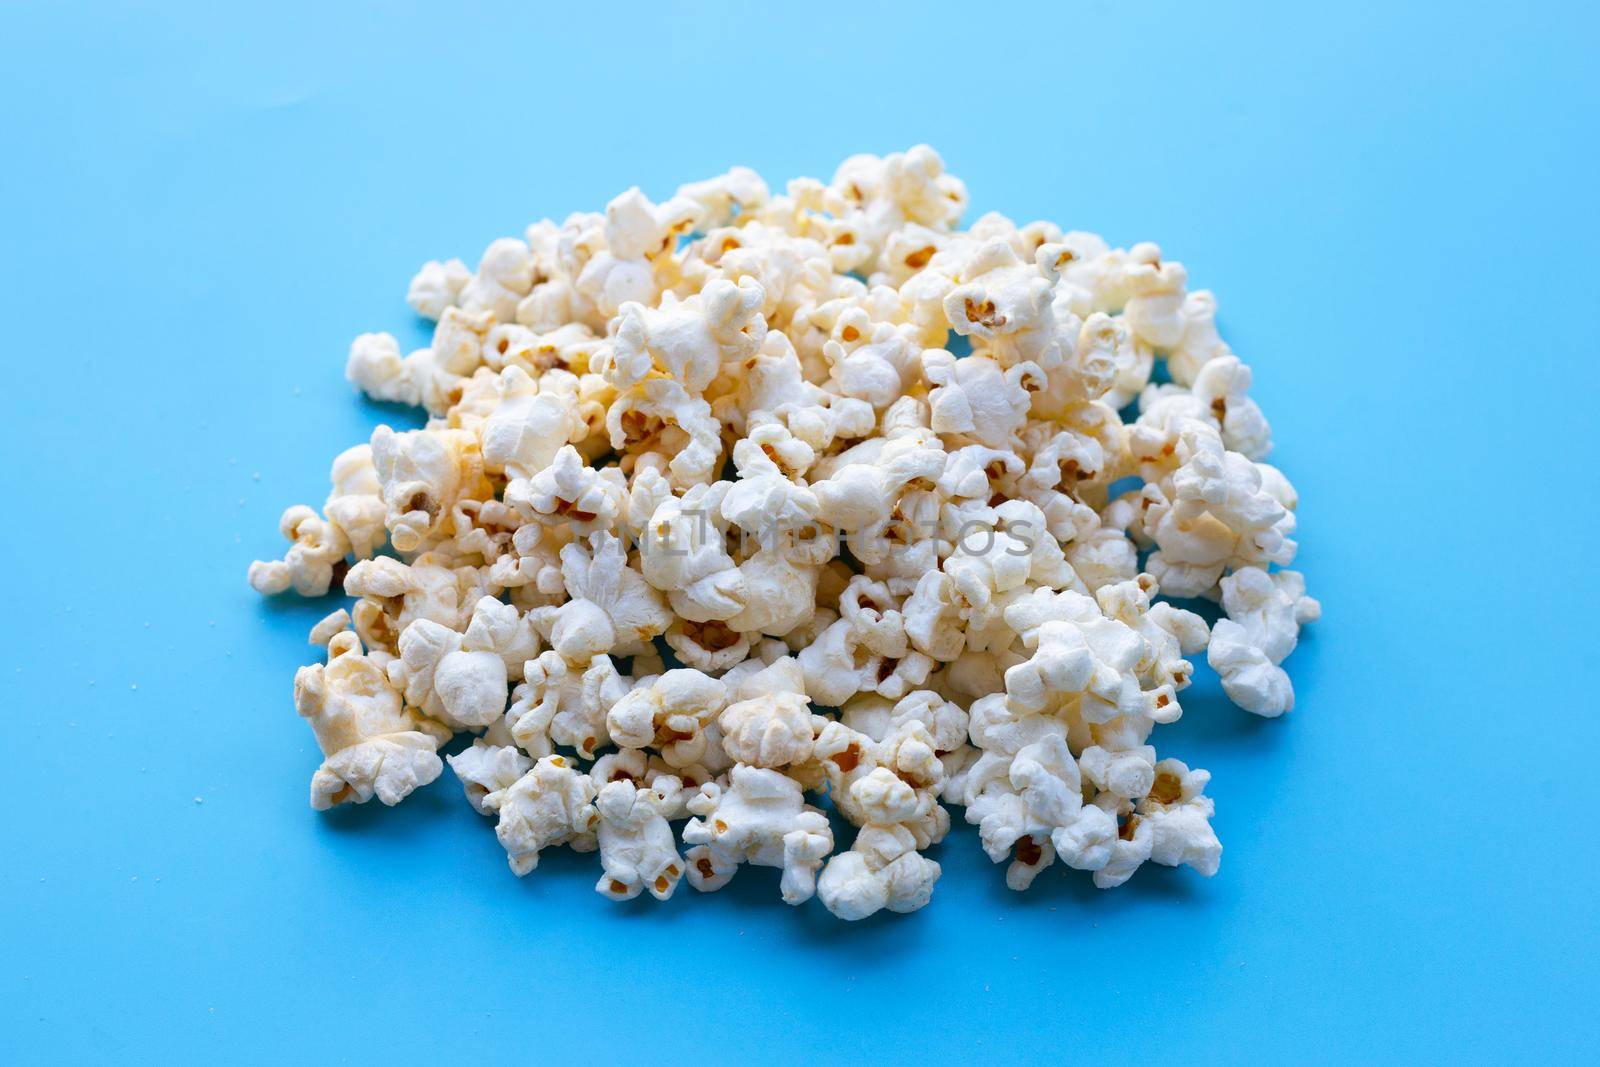 Popcorn on blue background. Copy space